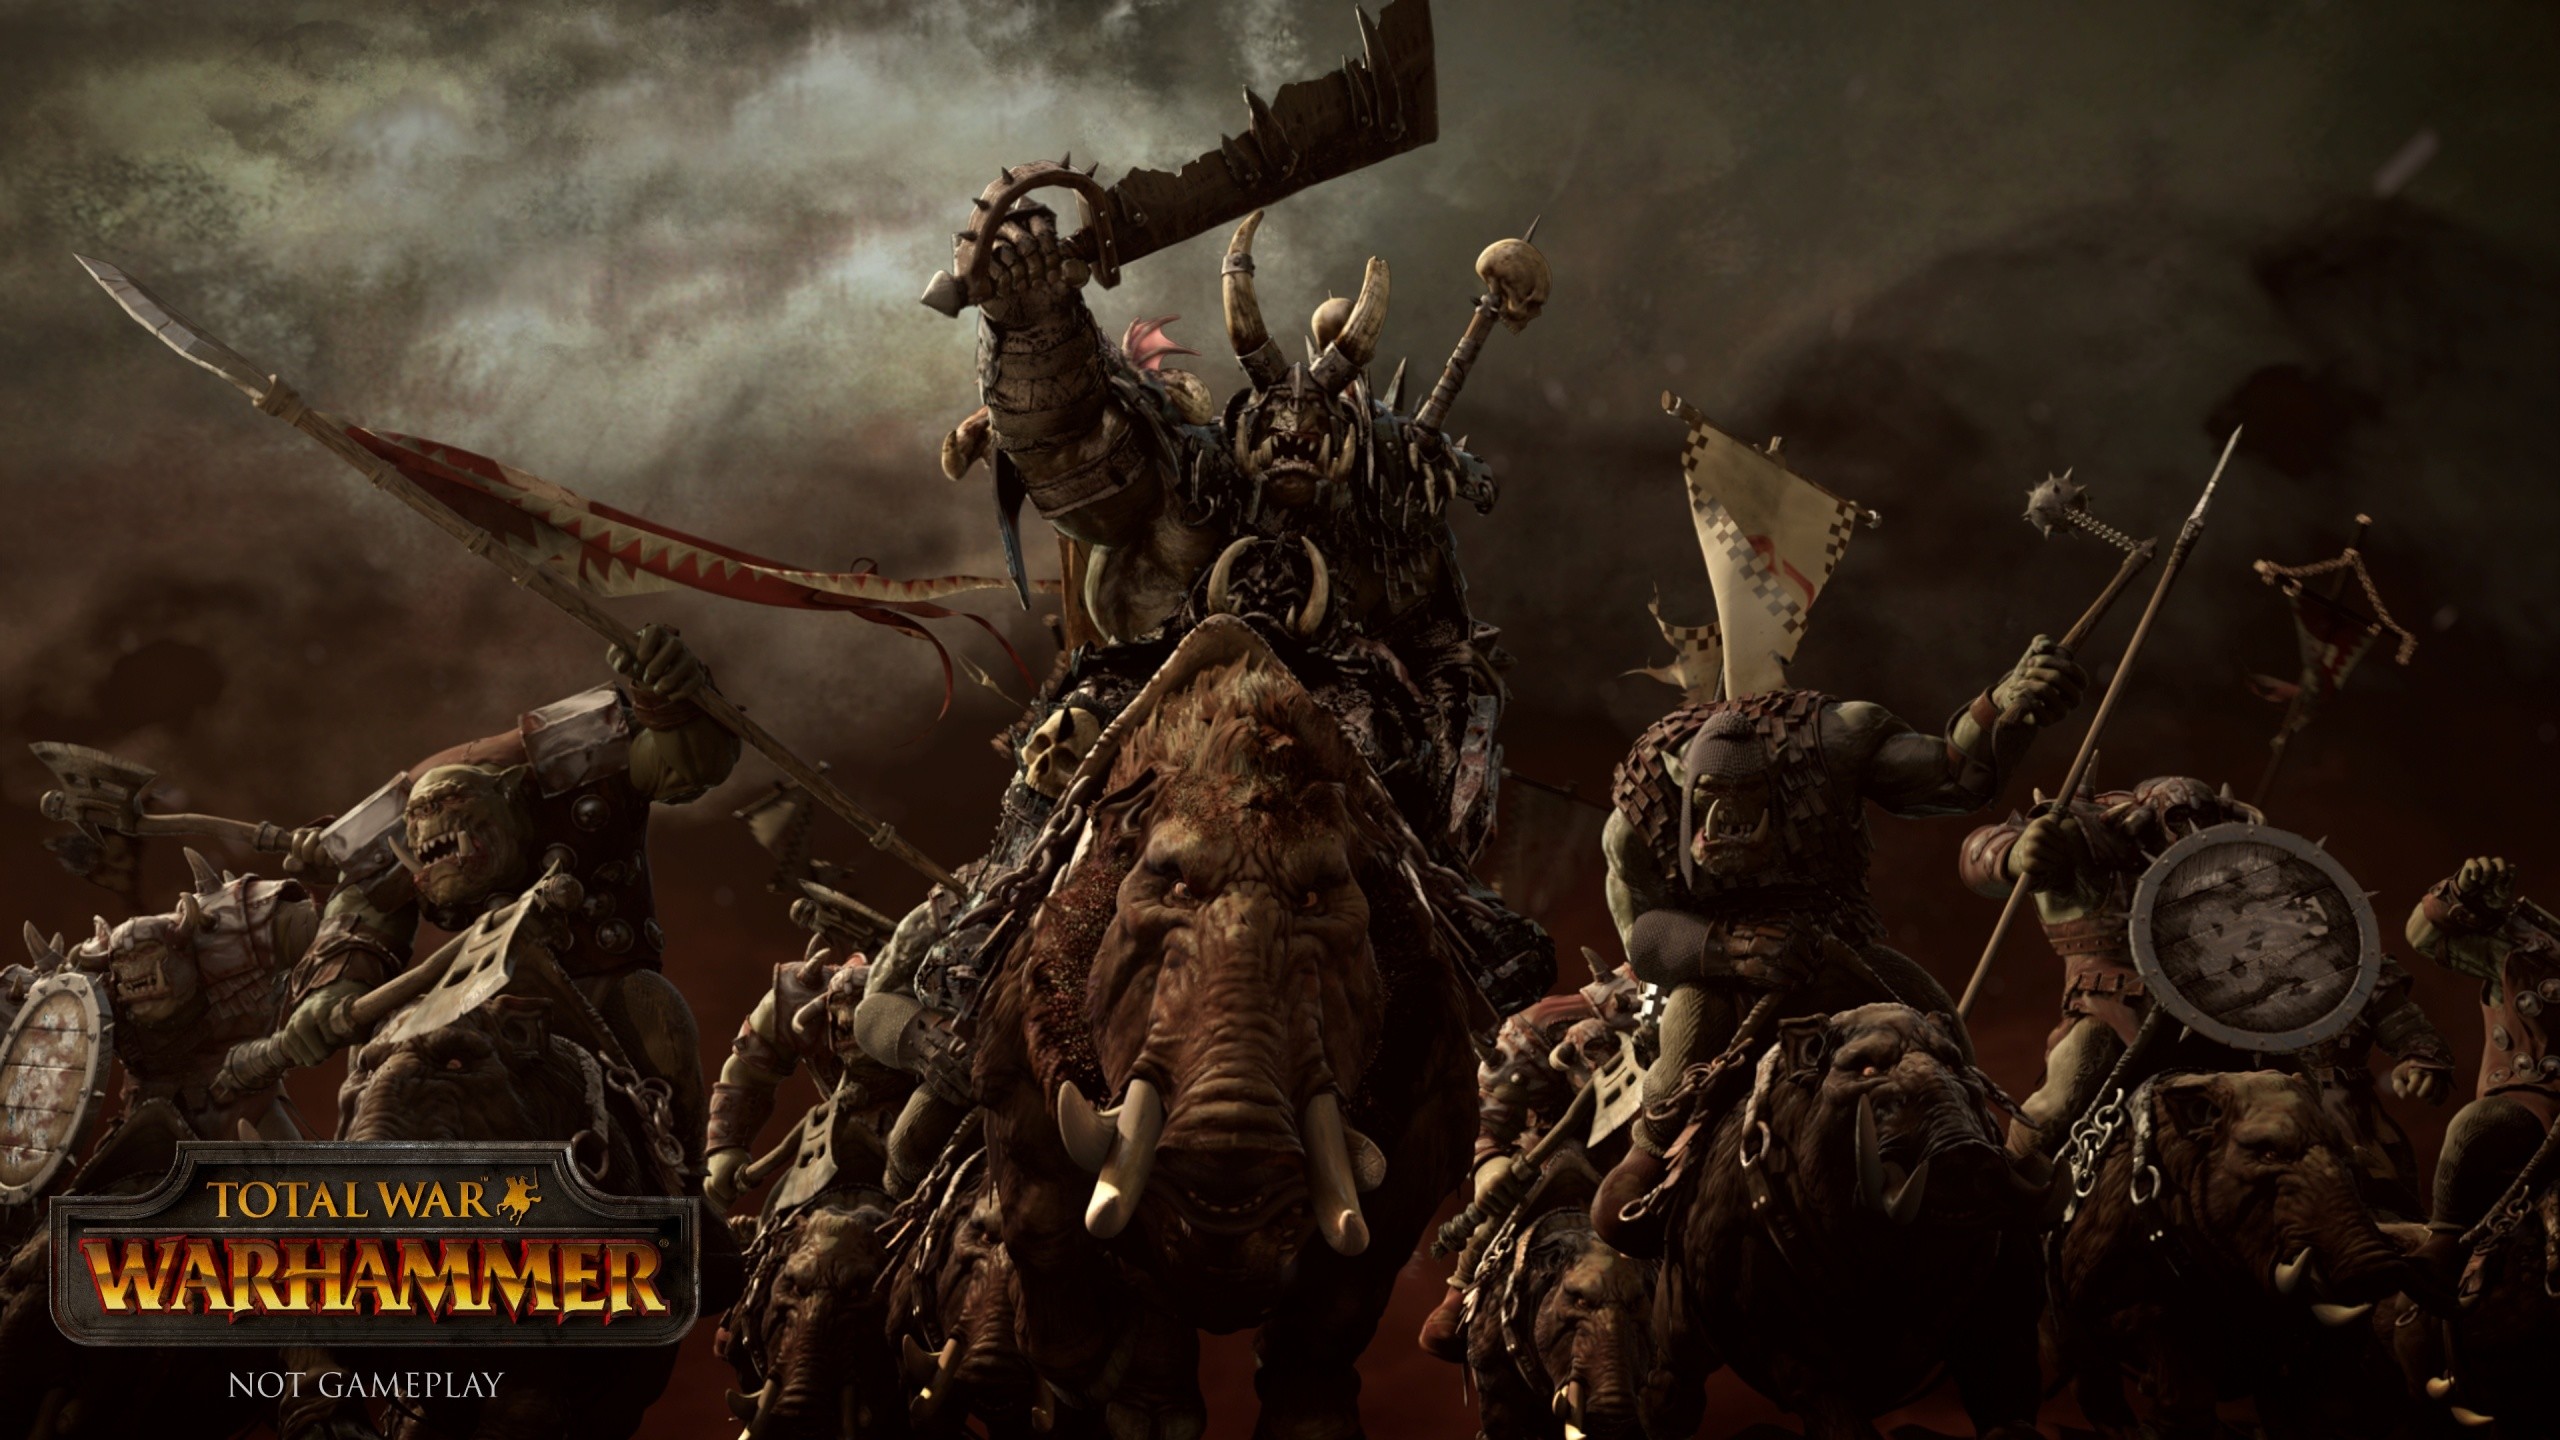 2560x1440 Total War: Warhammer Wallpaper 